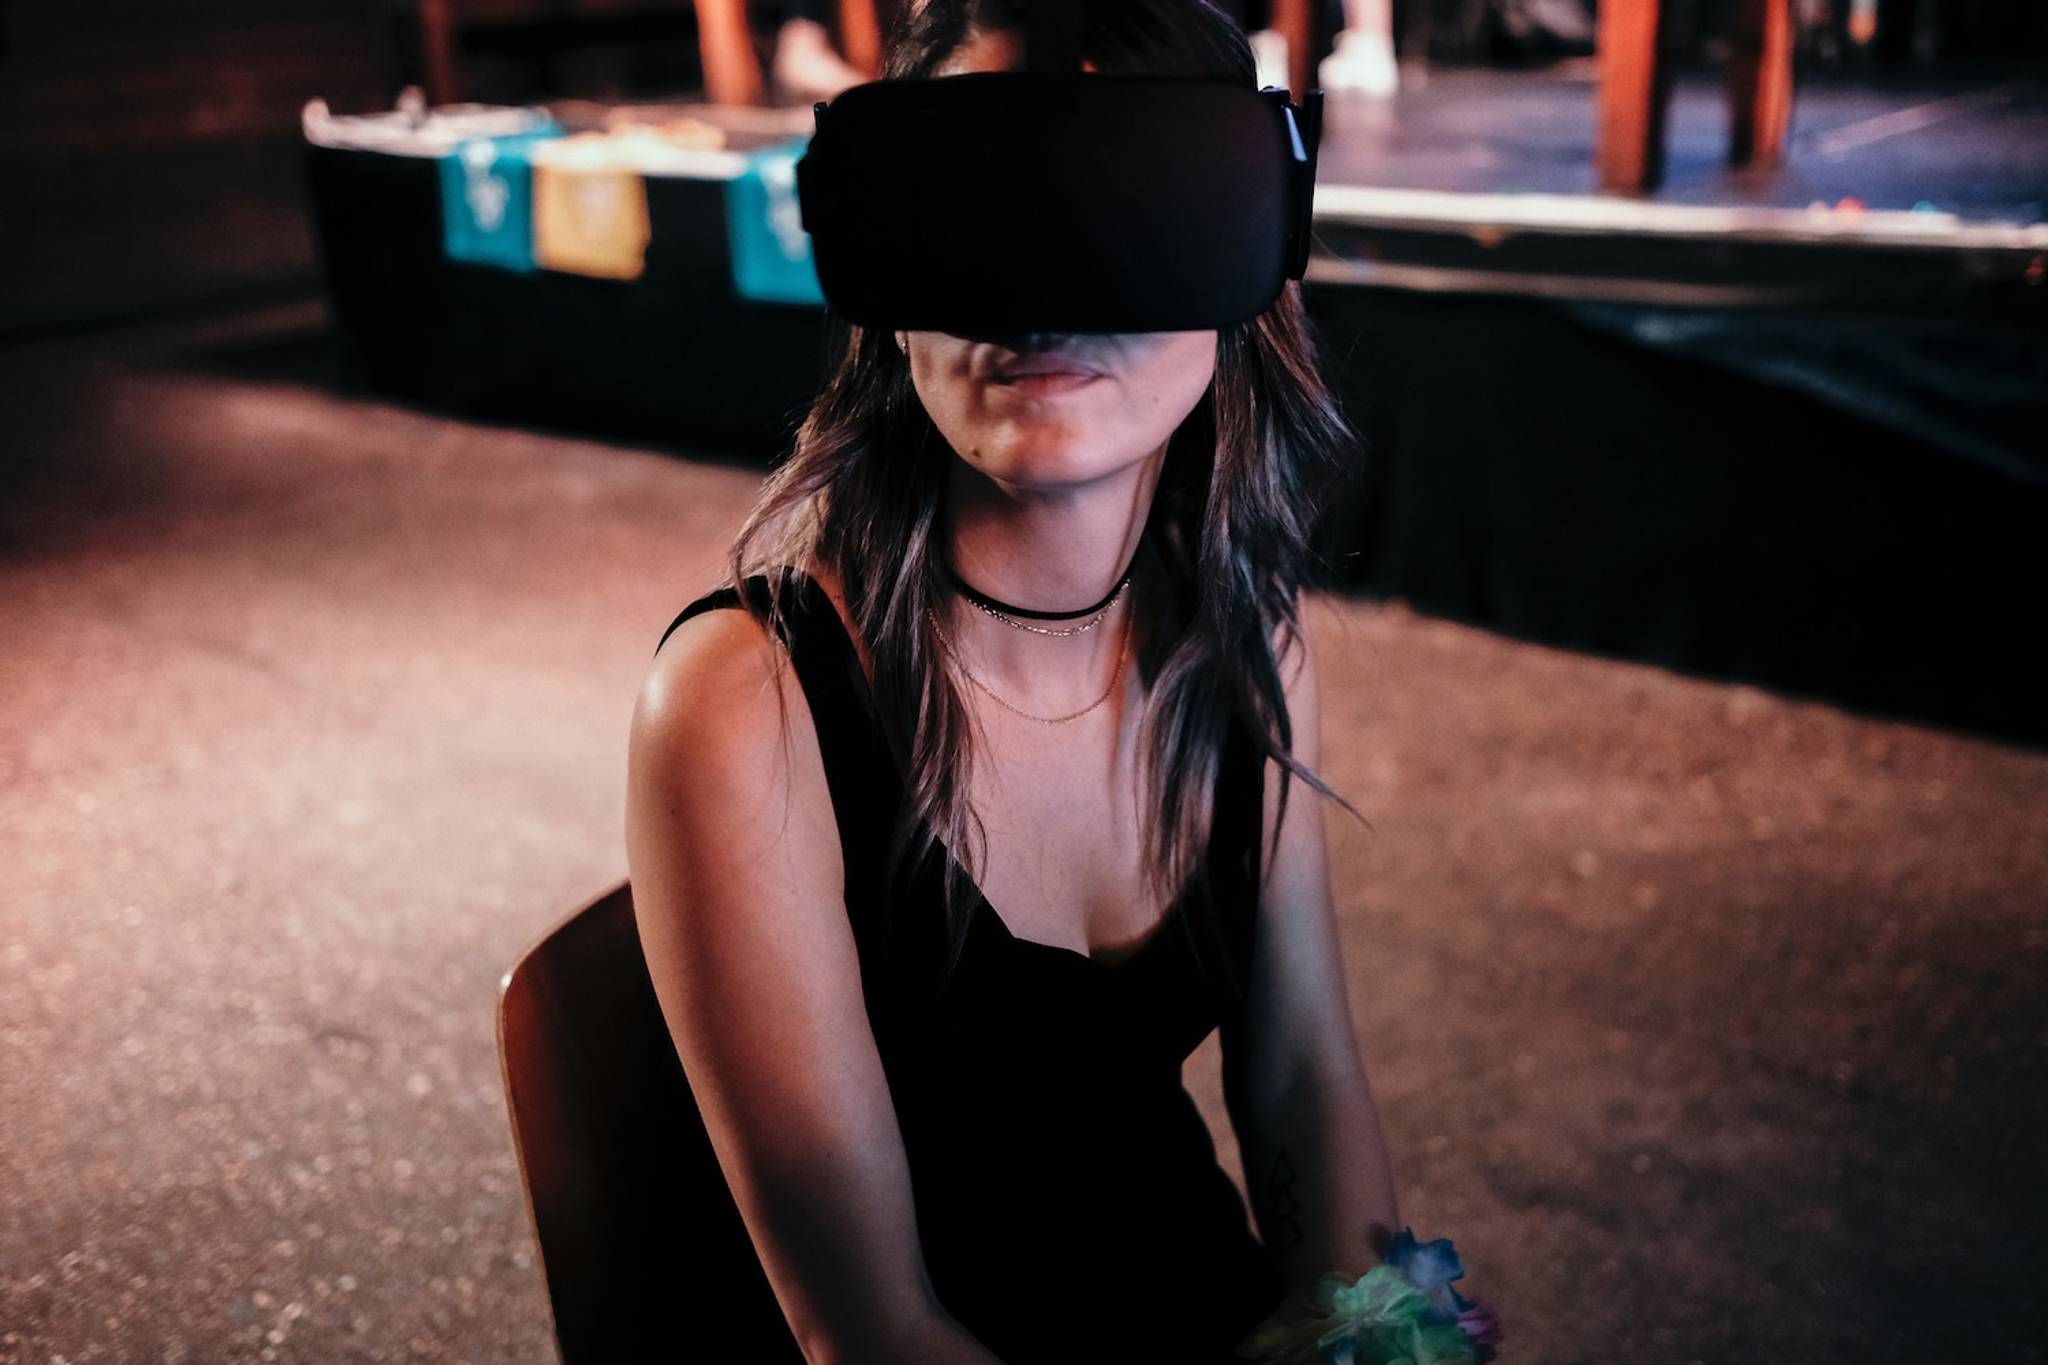 SpatialOS enables collaborative VR experiences